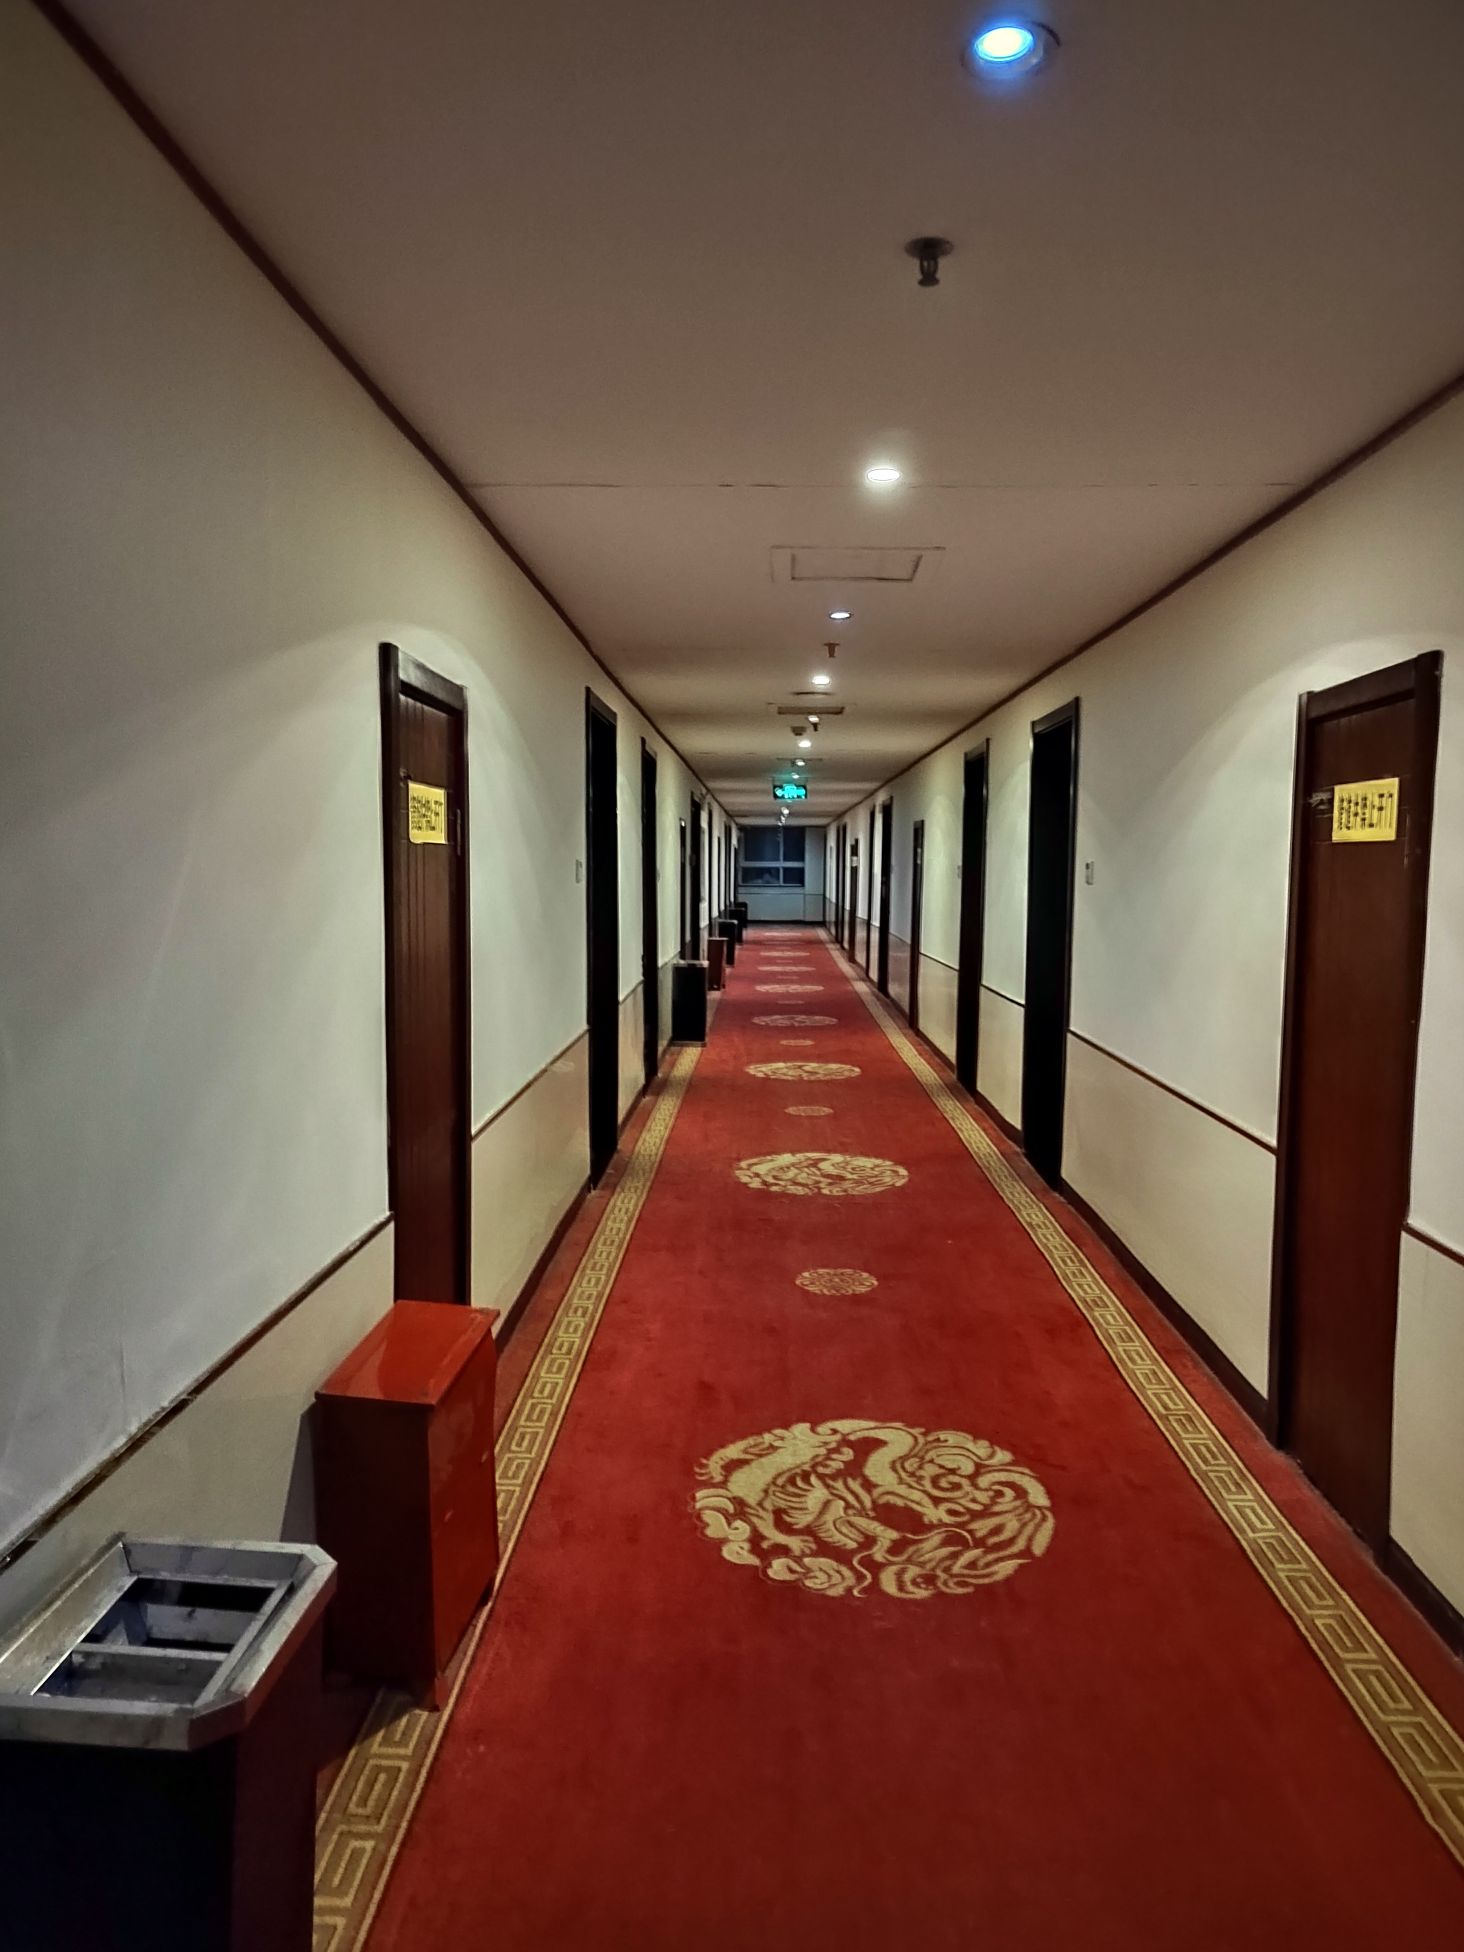 该酒店为汝南县招待所，规模挺大，有客房和餐厅以及停车场，客房分等级，1号楼3号楼没有电梯价格绝低于有